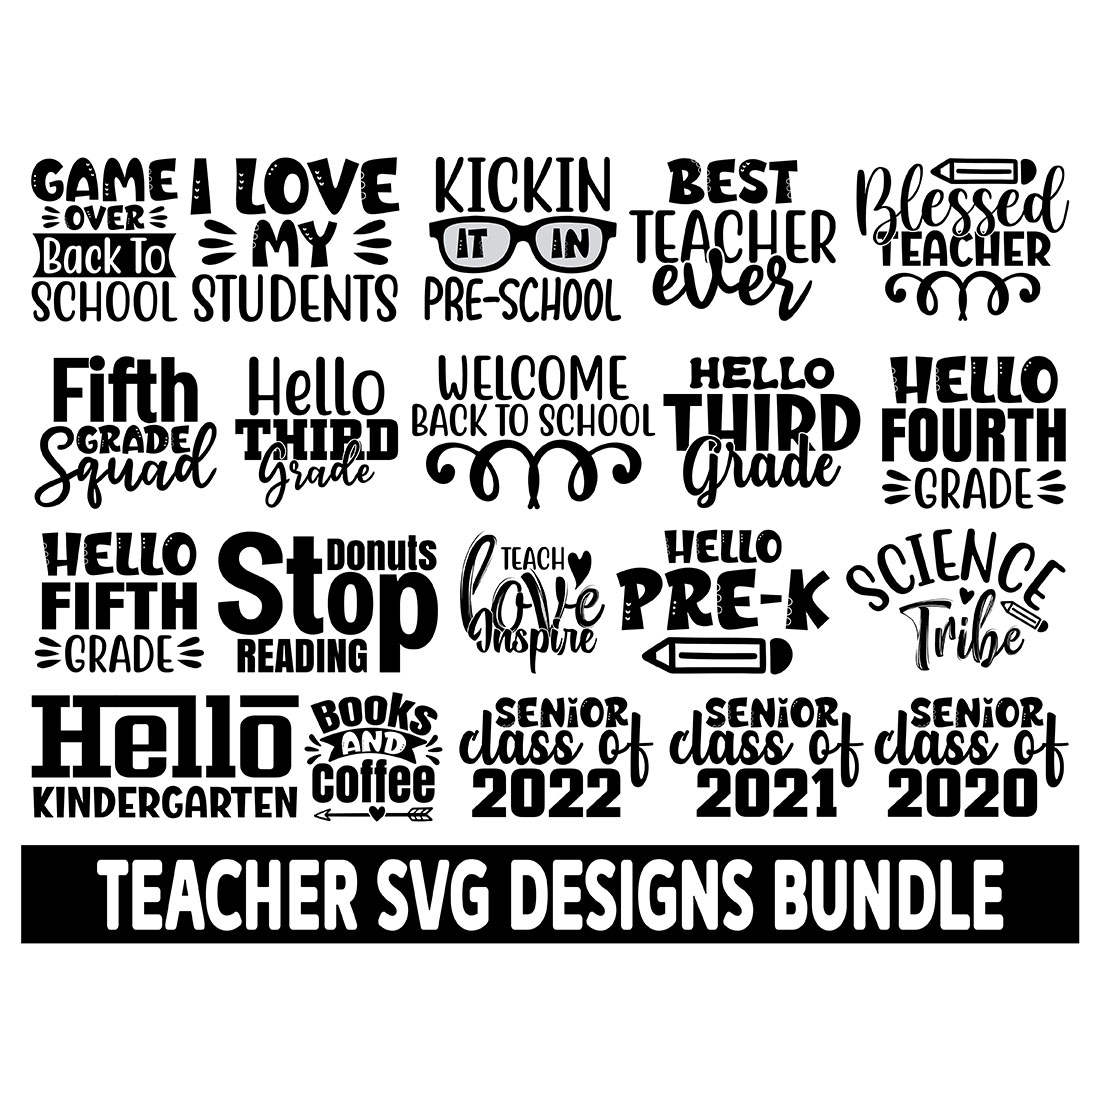 35 Teacher SVG Designs Bundle main cover